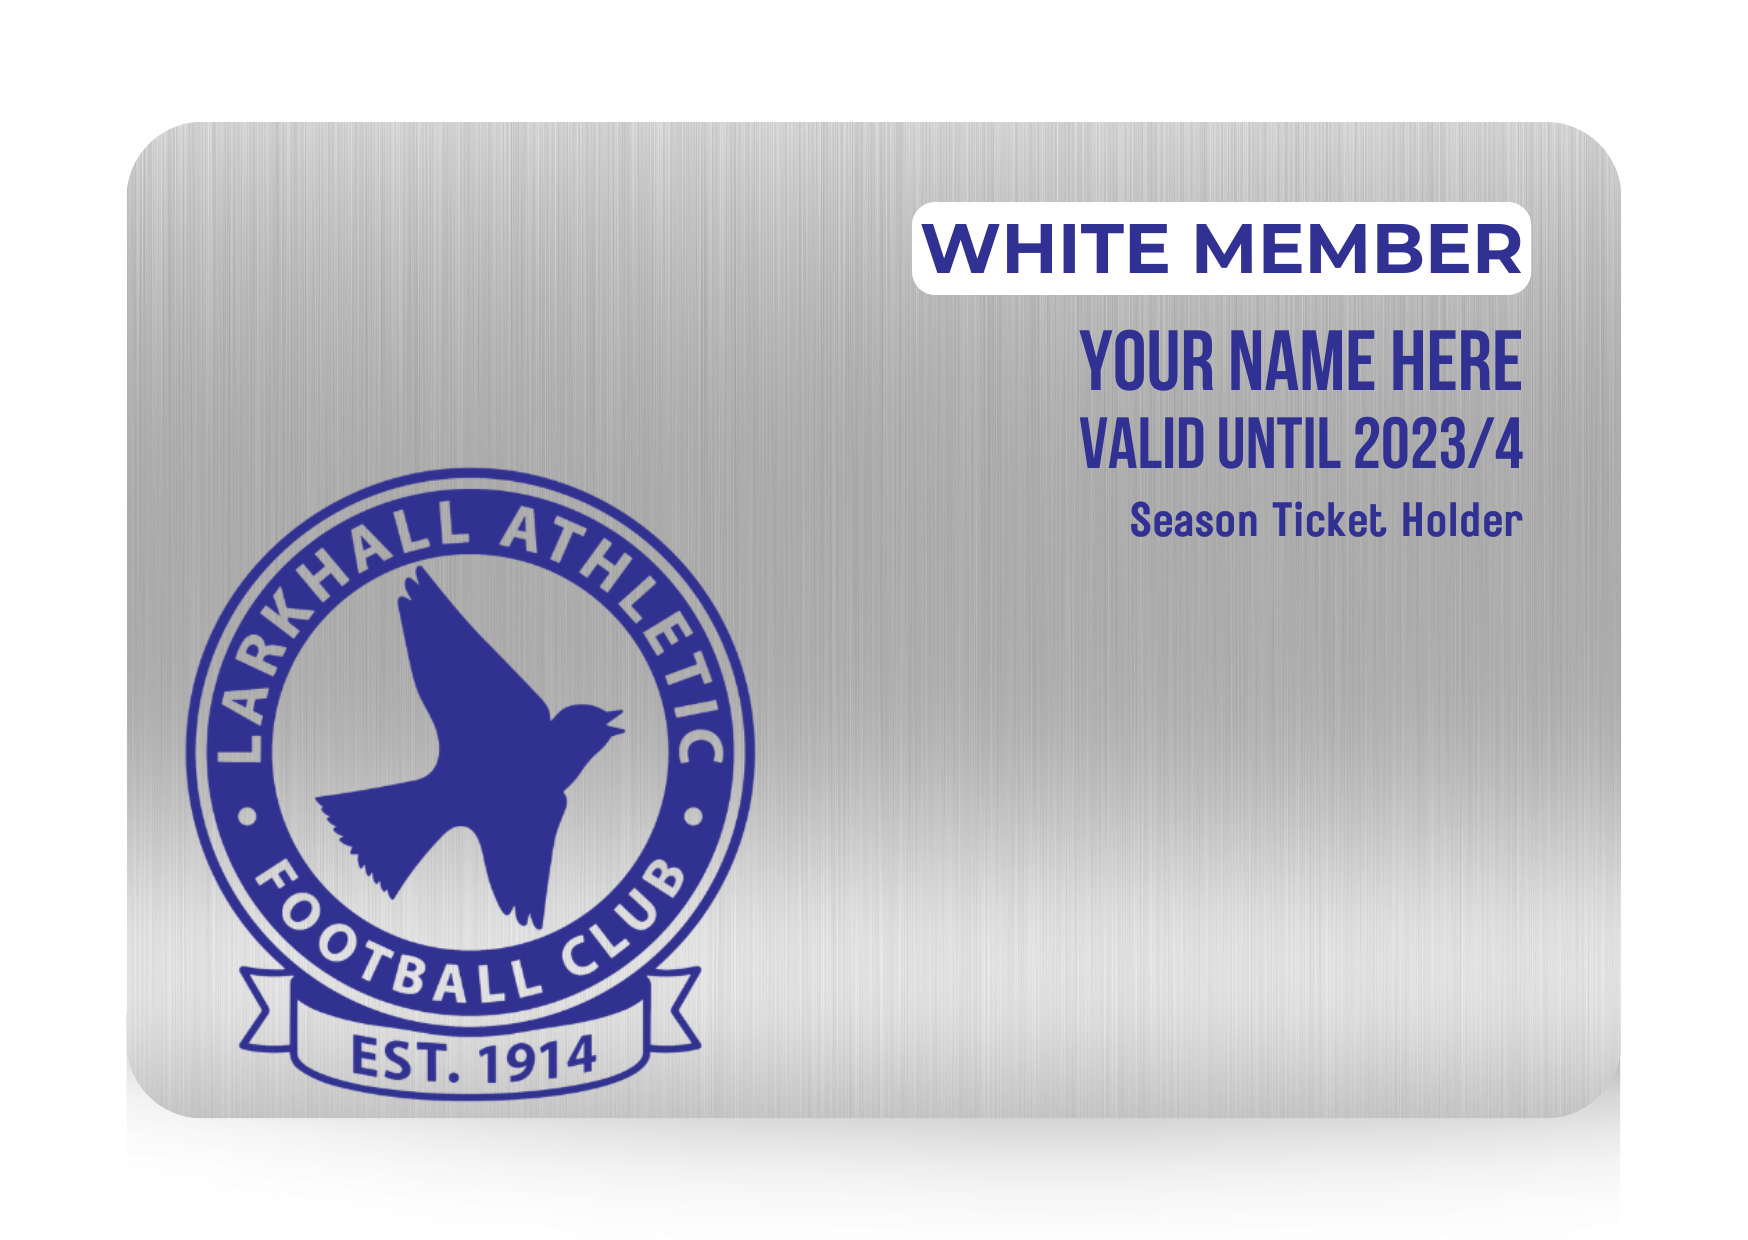 2. White membership - over £700 in value